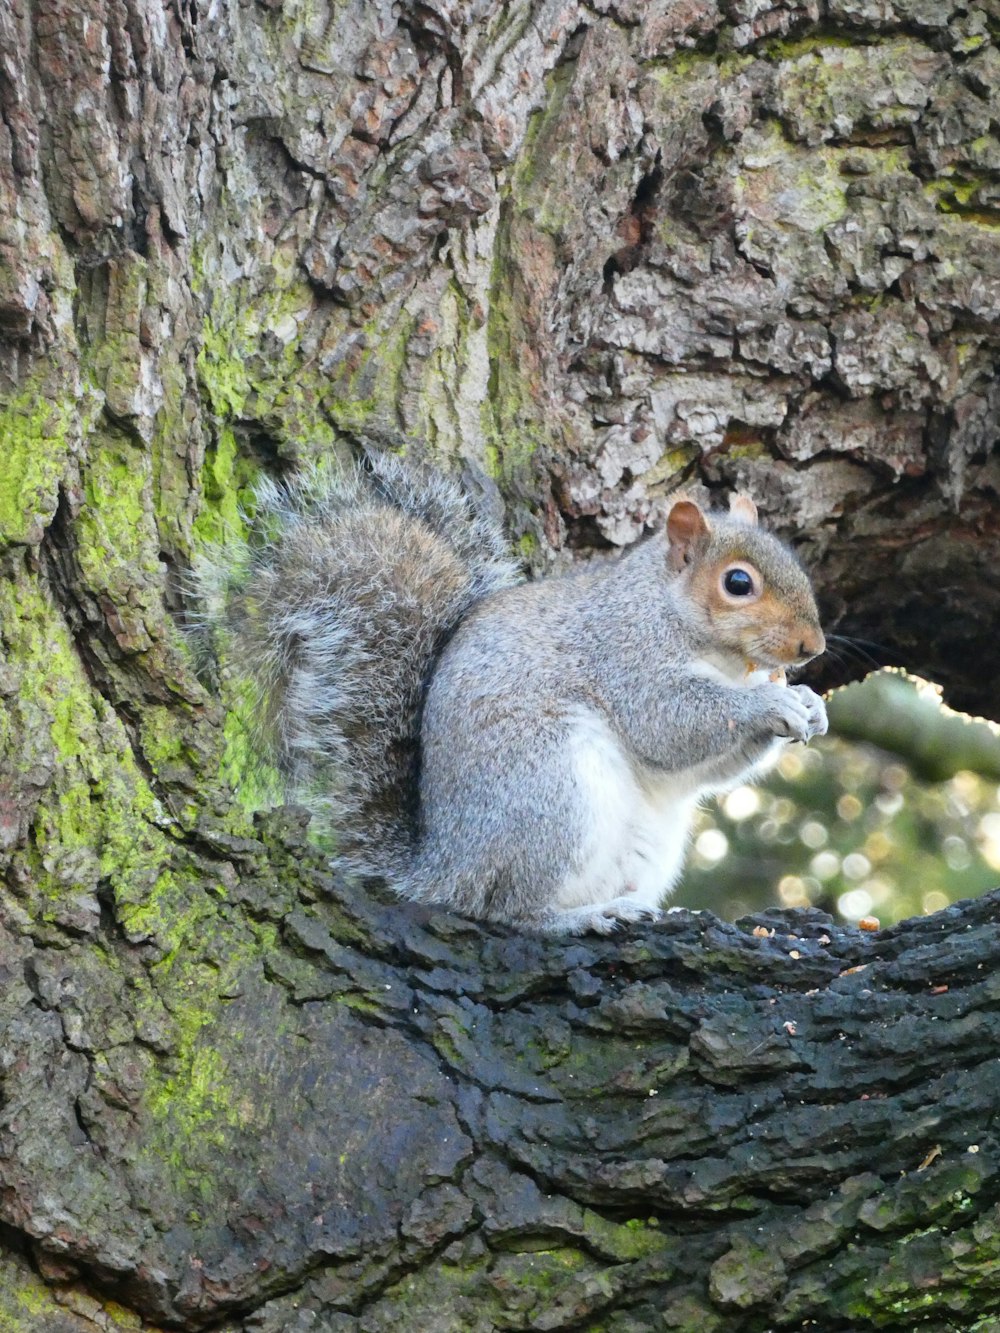 a squirrel sitting on a rock